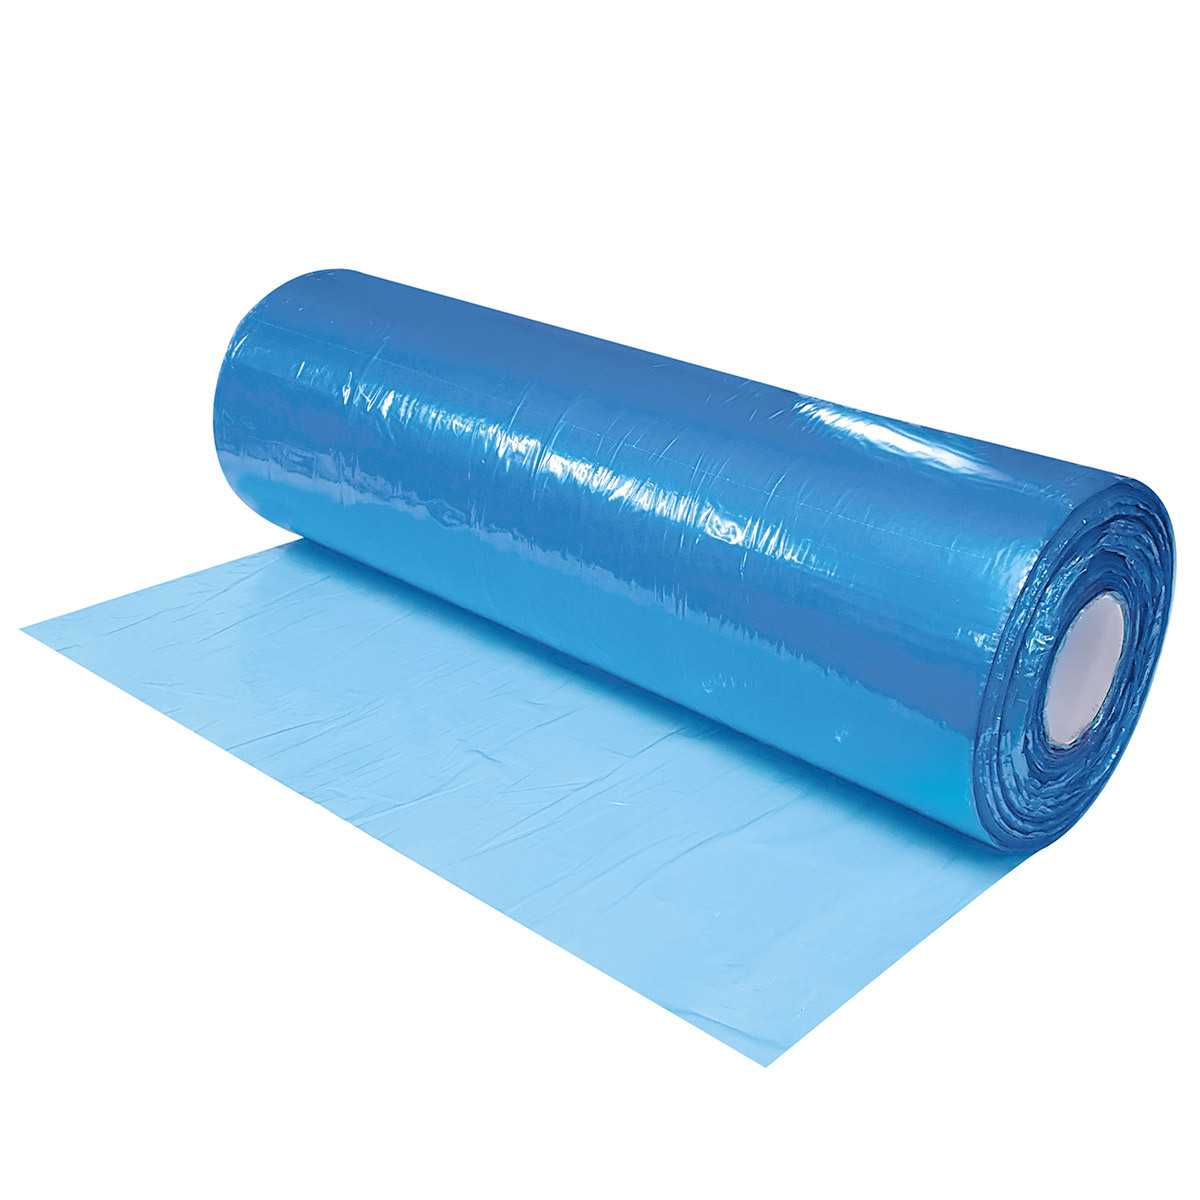 Rippa Sheet Blue LD 610 x 610mm x 25um, 1500/roll